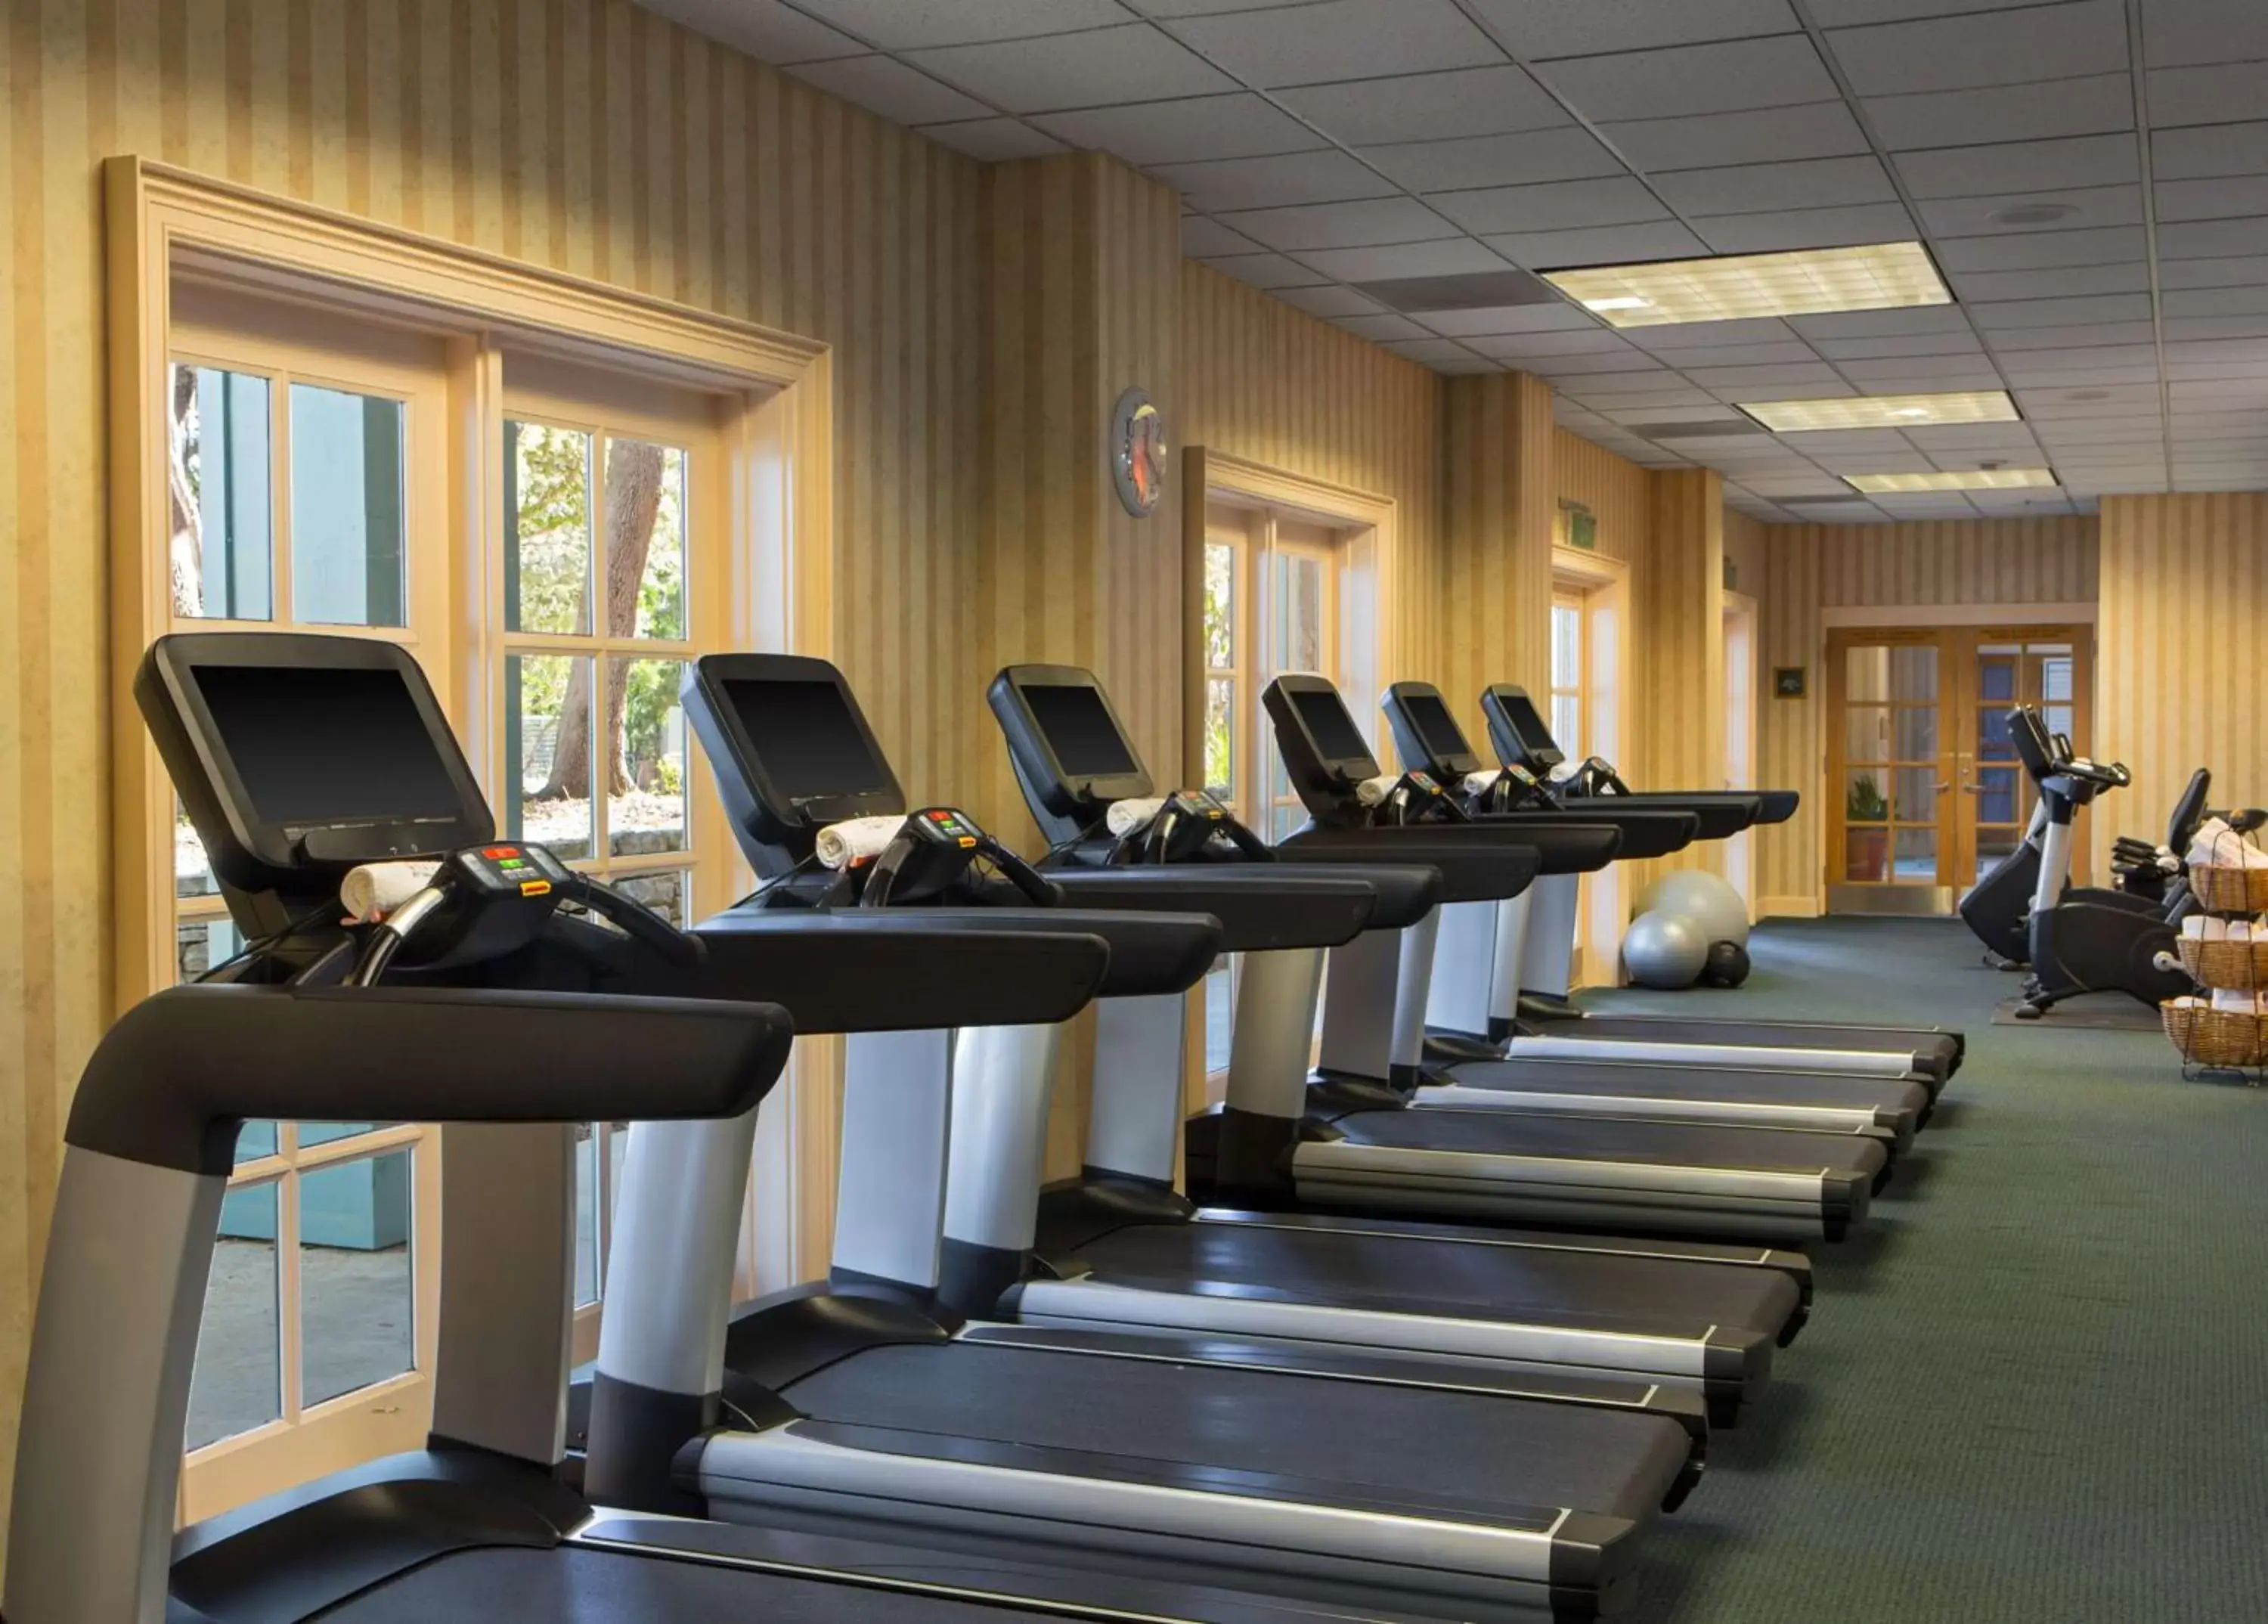 Fitness centre/facilities, Fitness Center/Facilities in Hyatt Regency Hill Country Resort & Spa